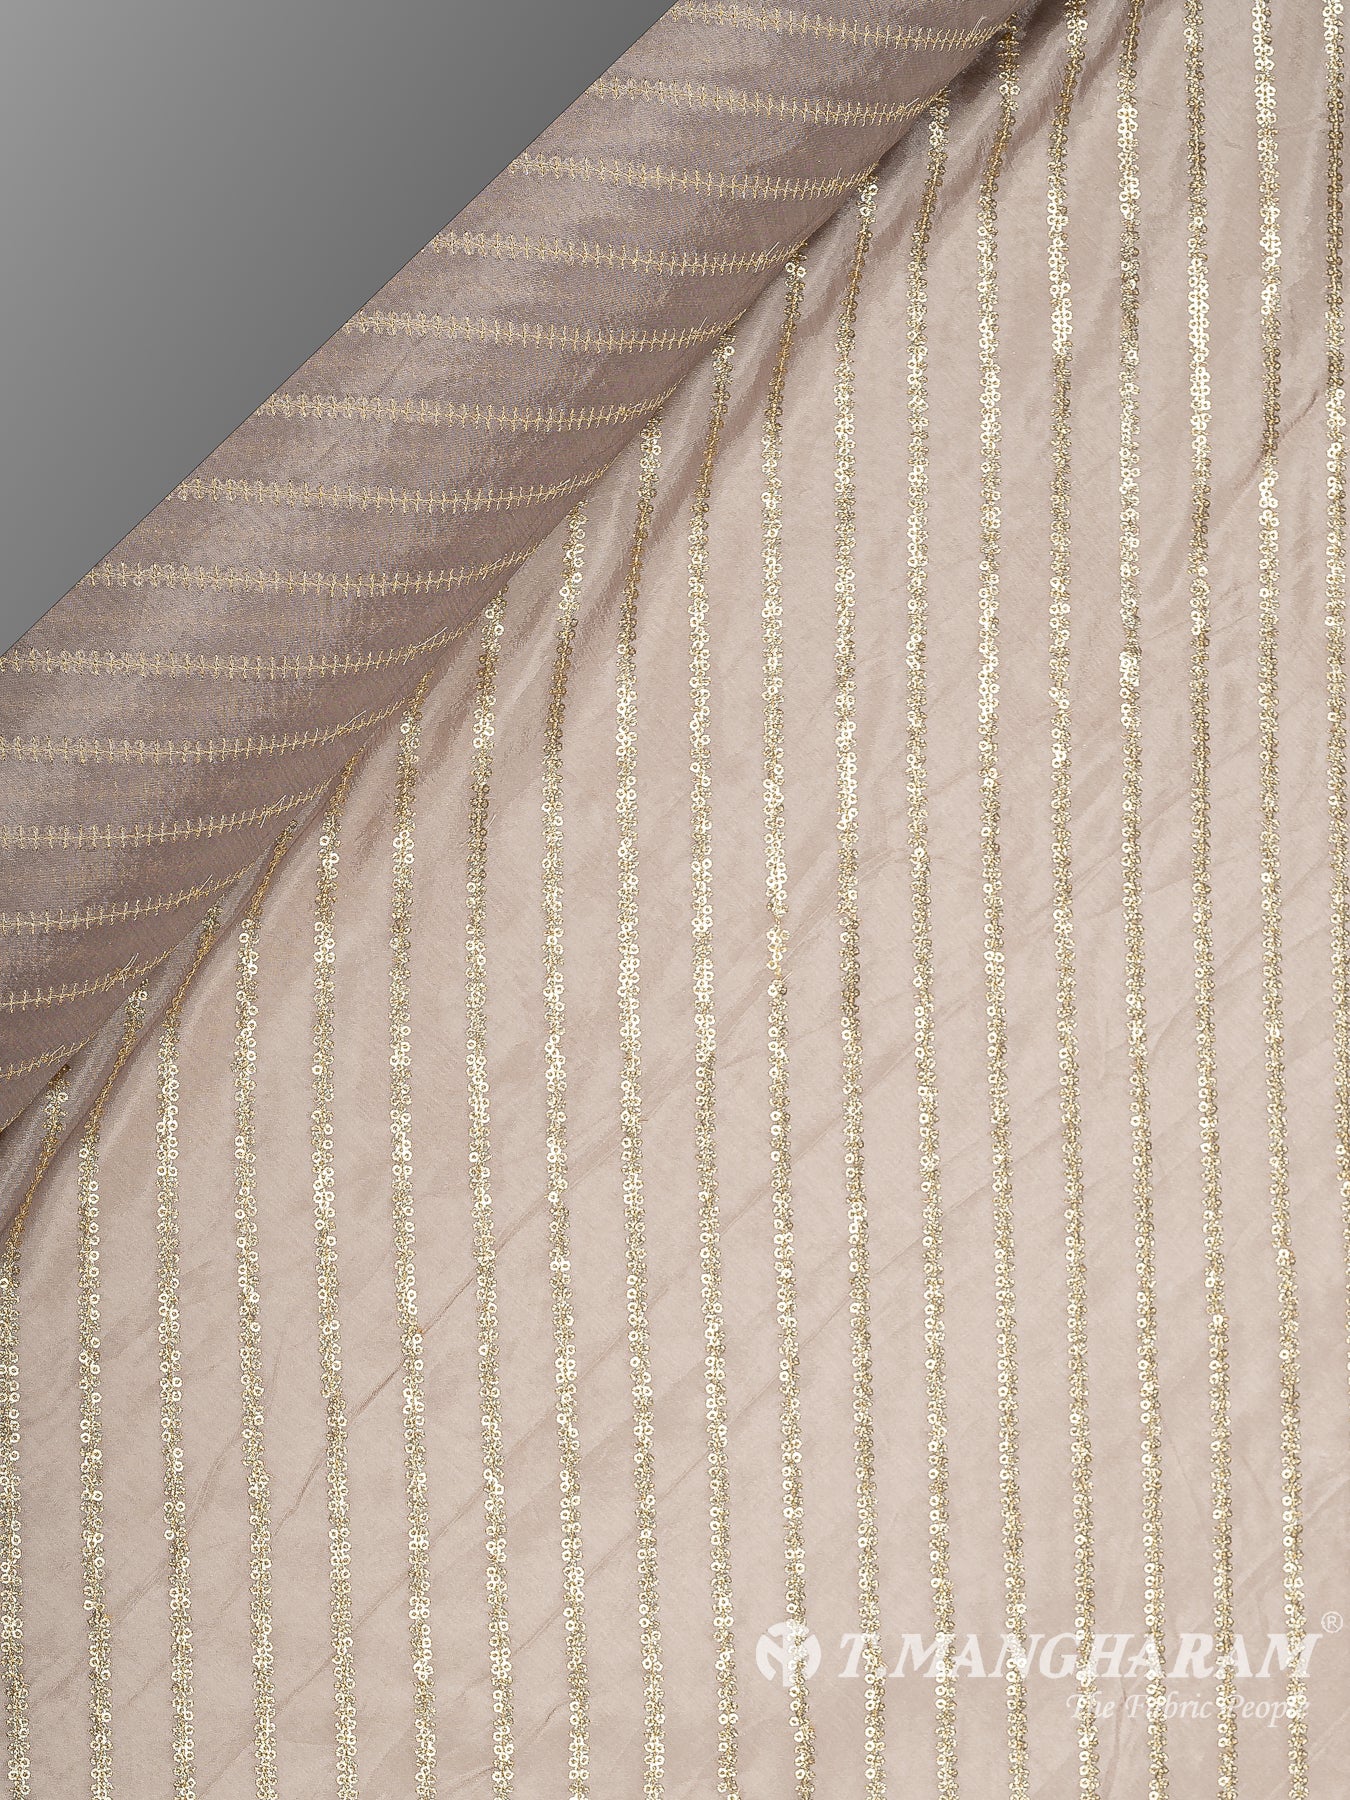 Brown Chinnon Silk Fabric - EC8720 view-2